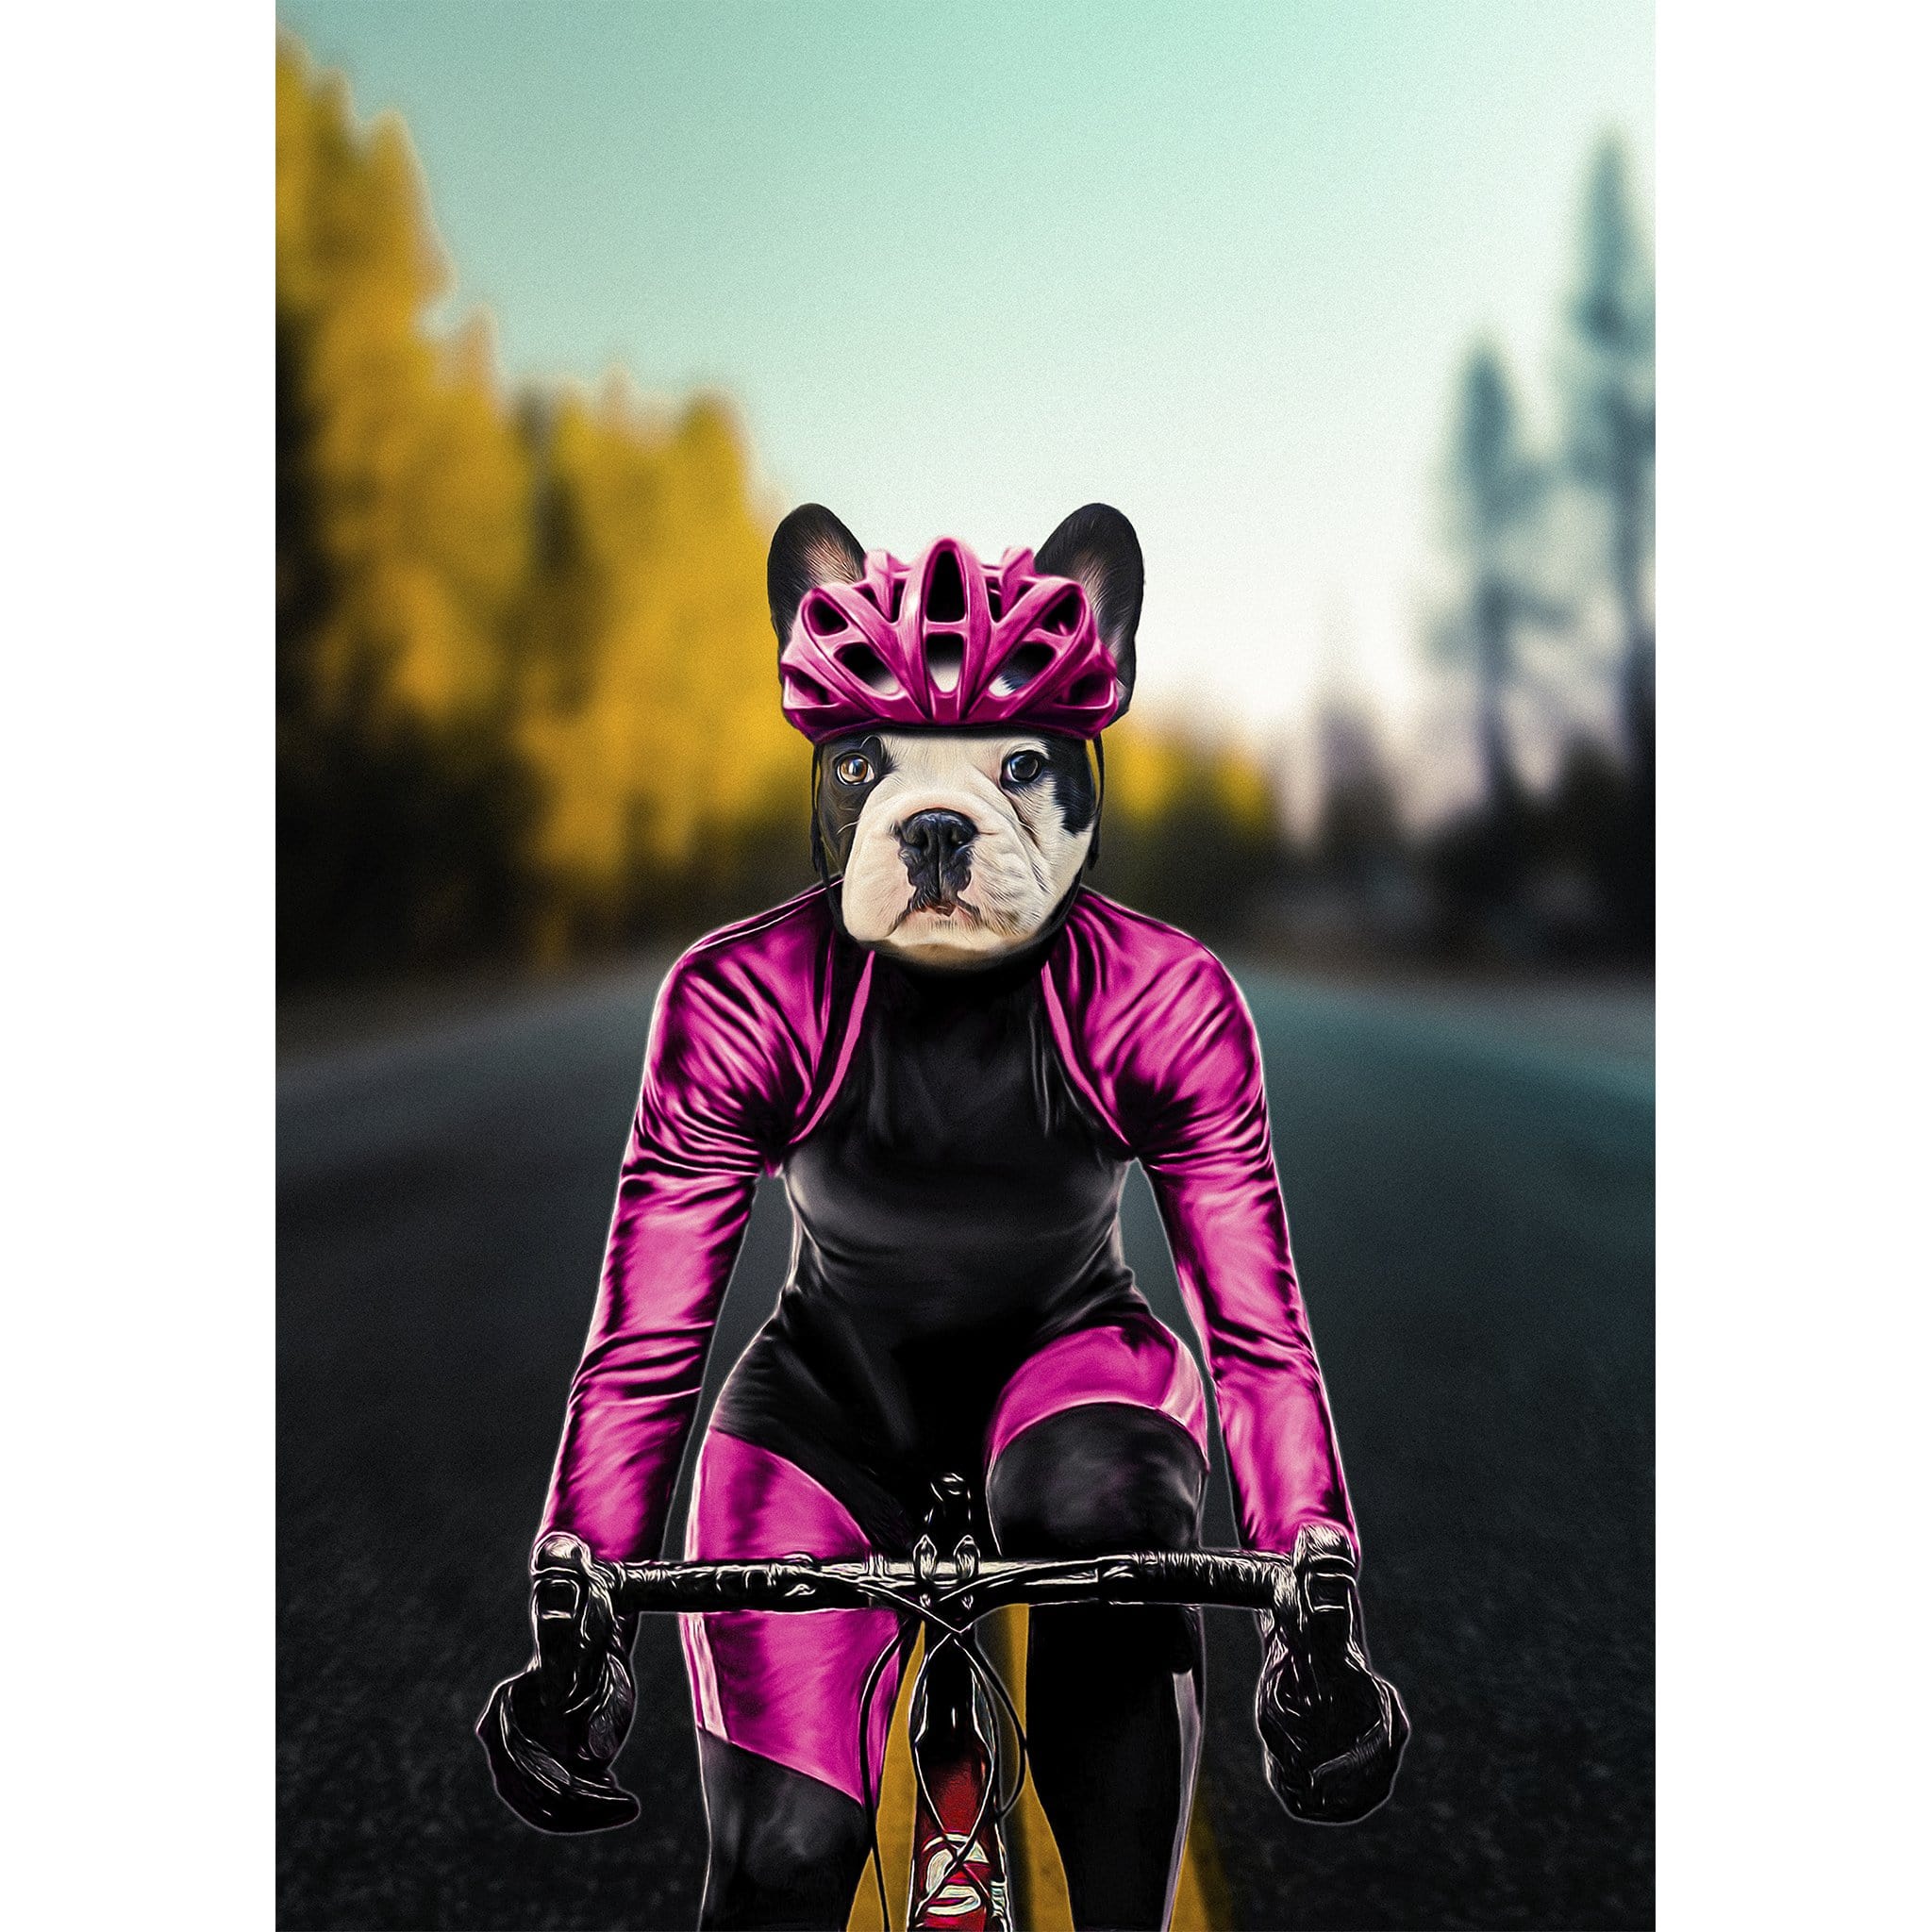 &#39;The Female Cyclist&#39; Digital Portrait